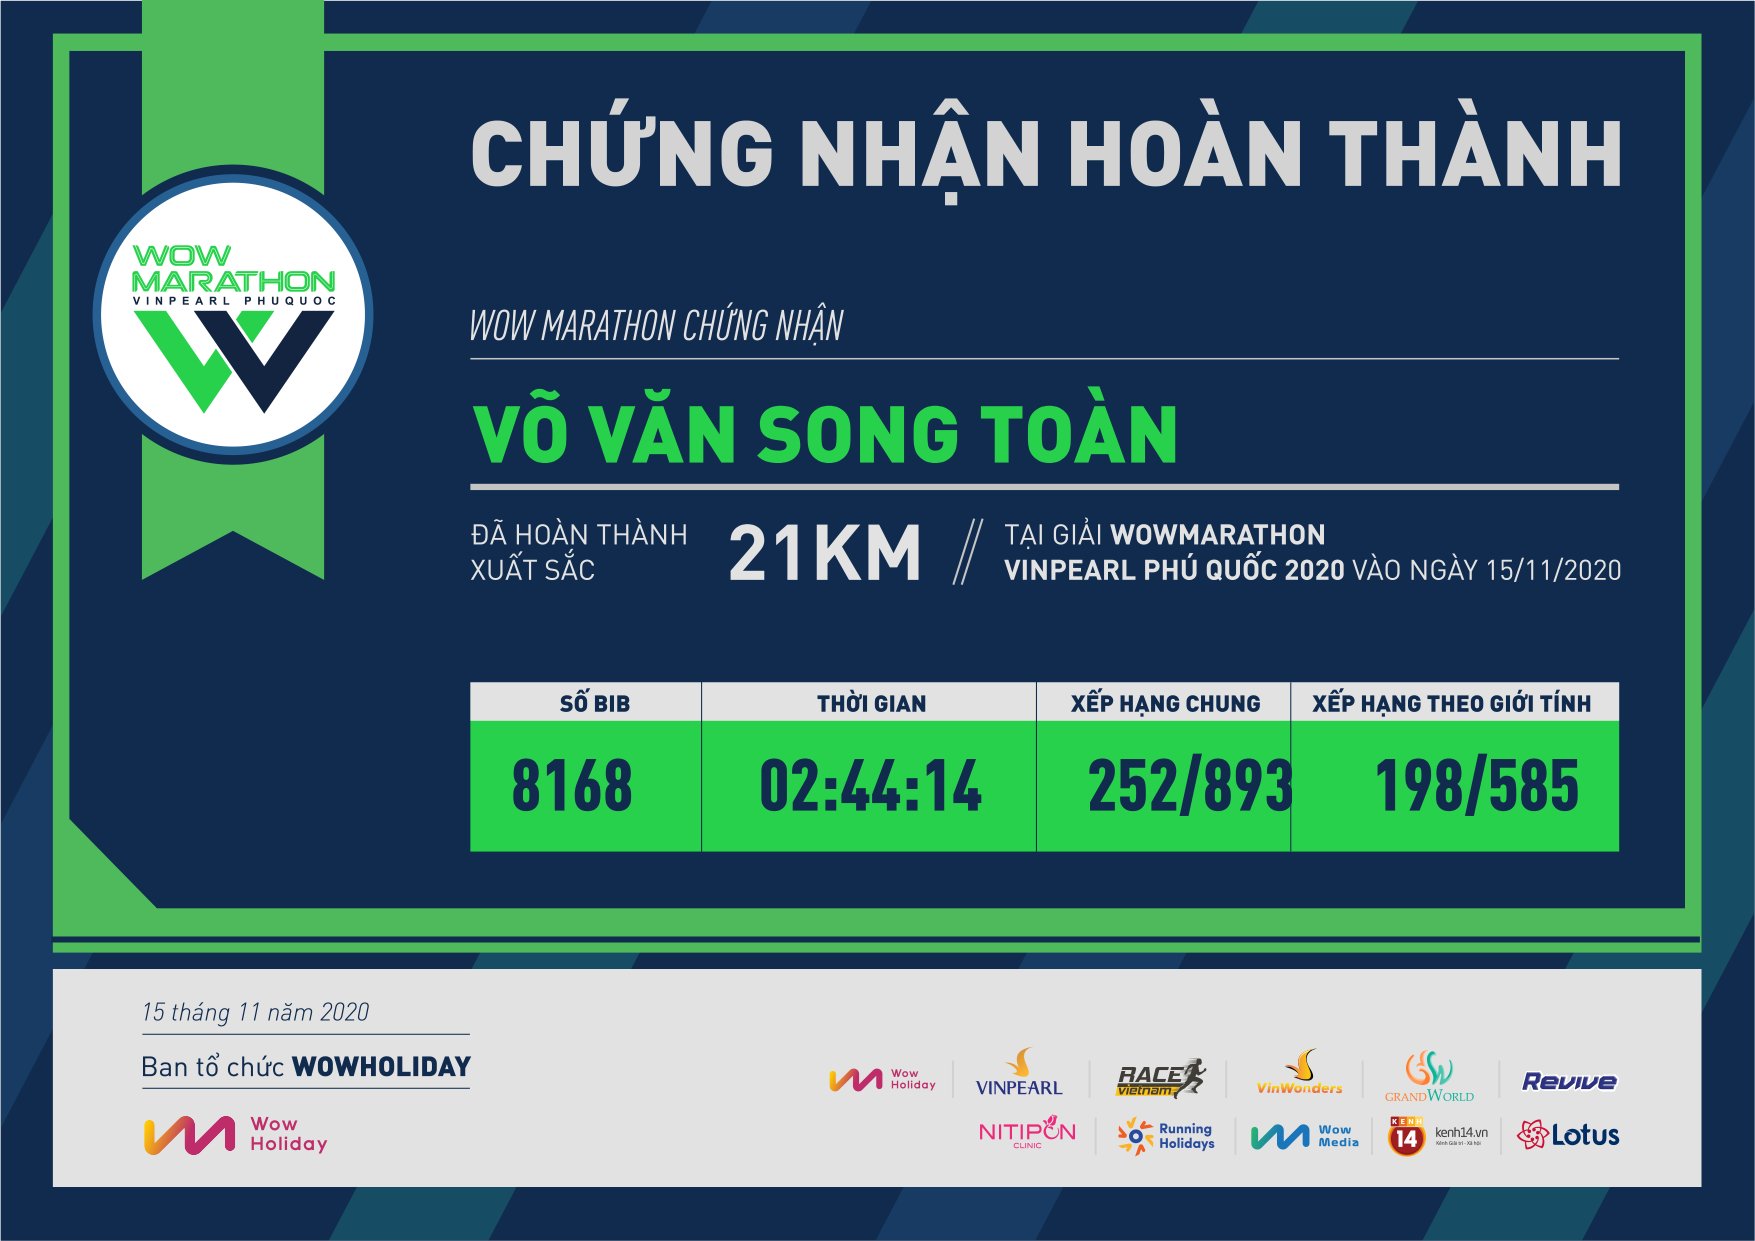 8168 - Võ Văn Song Toàn